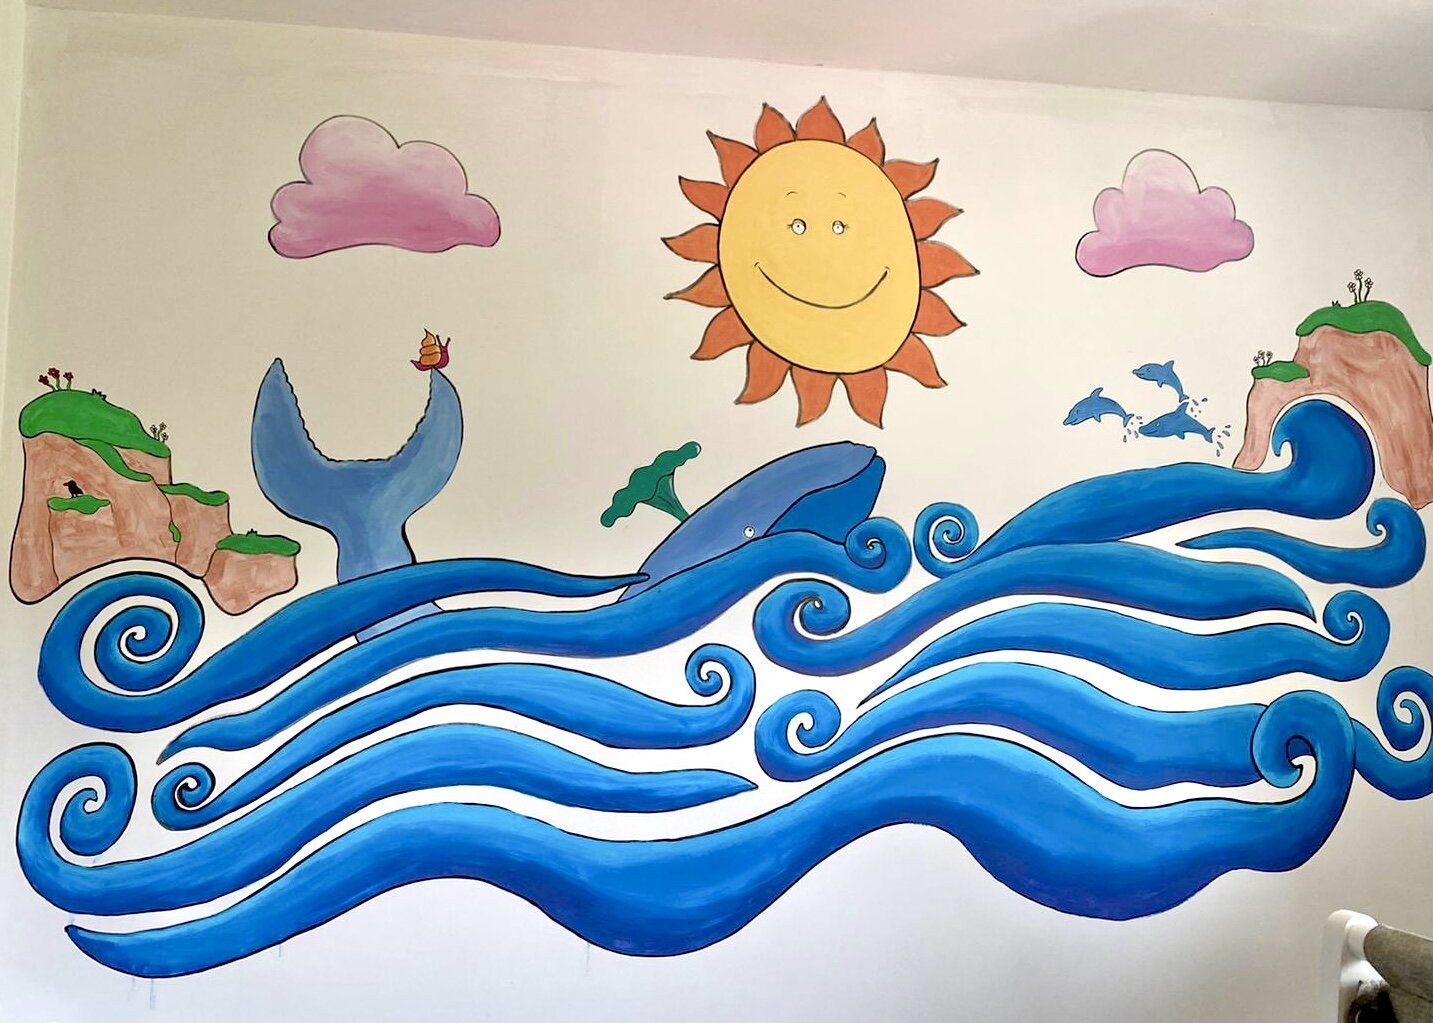 Children's Julia Donaldson inspired mural.